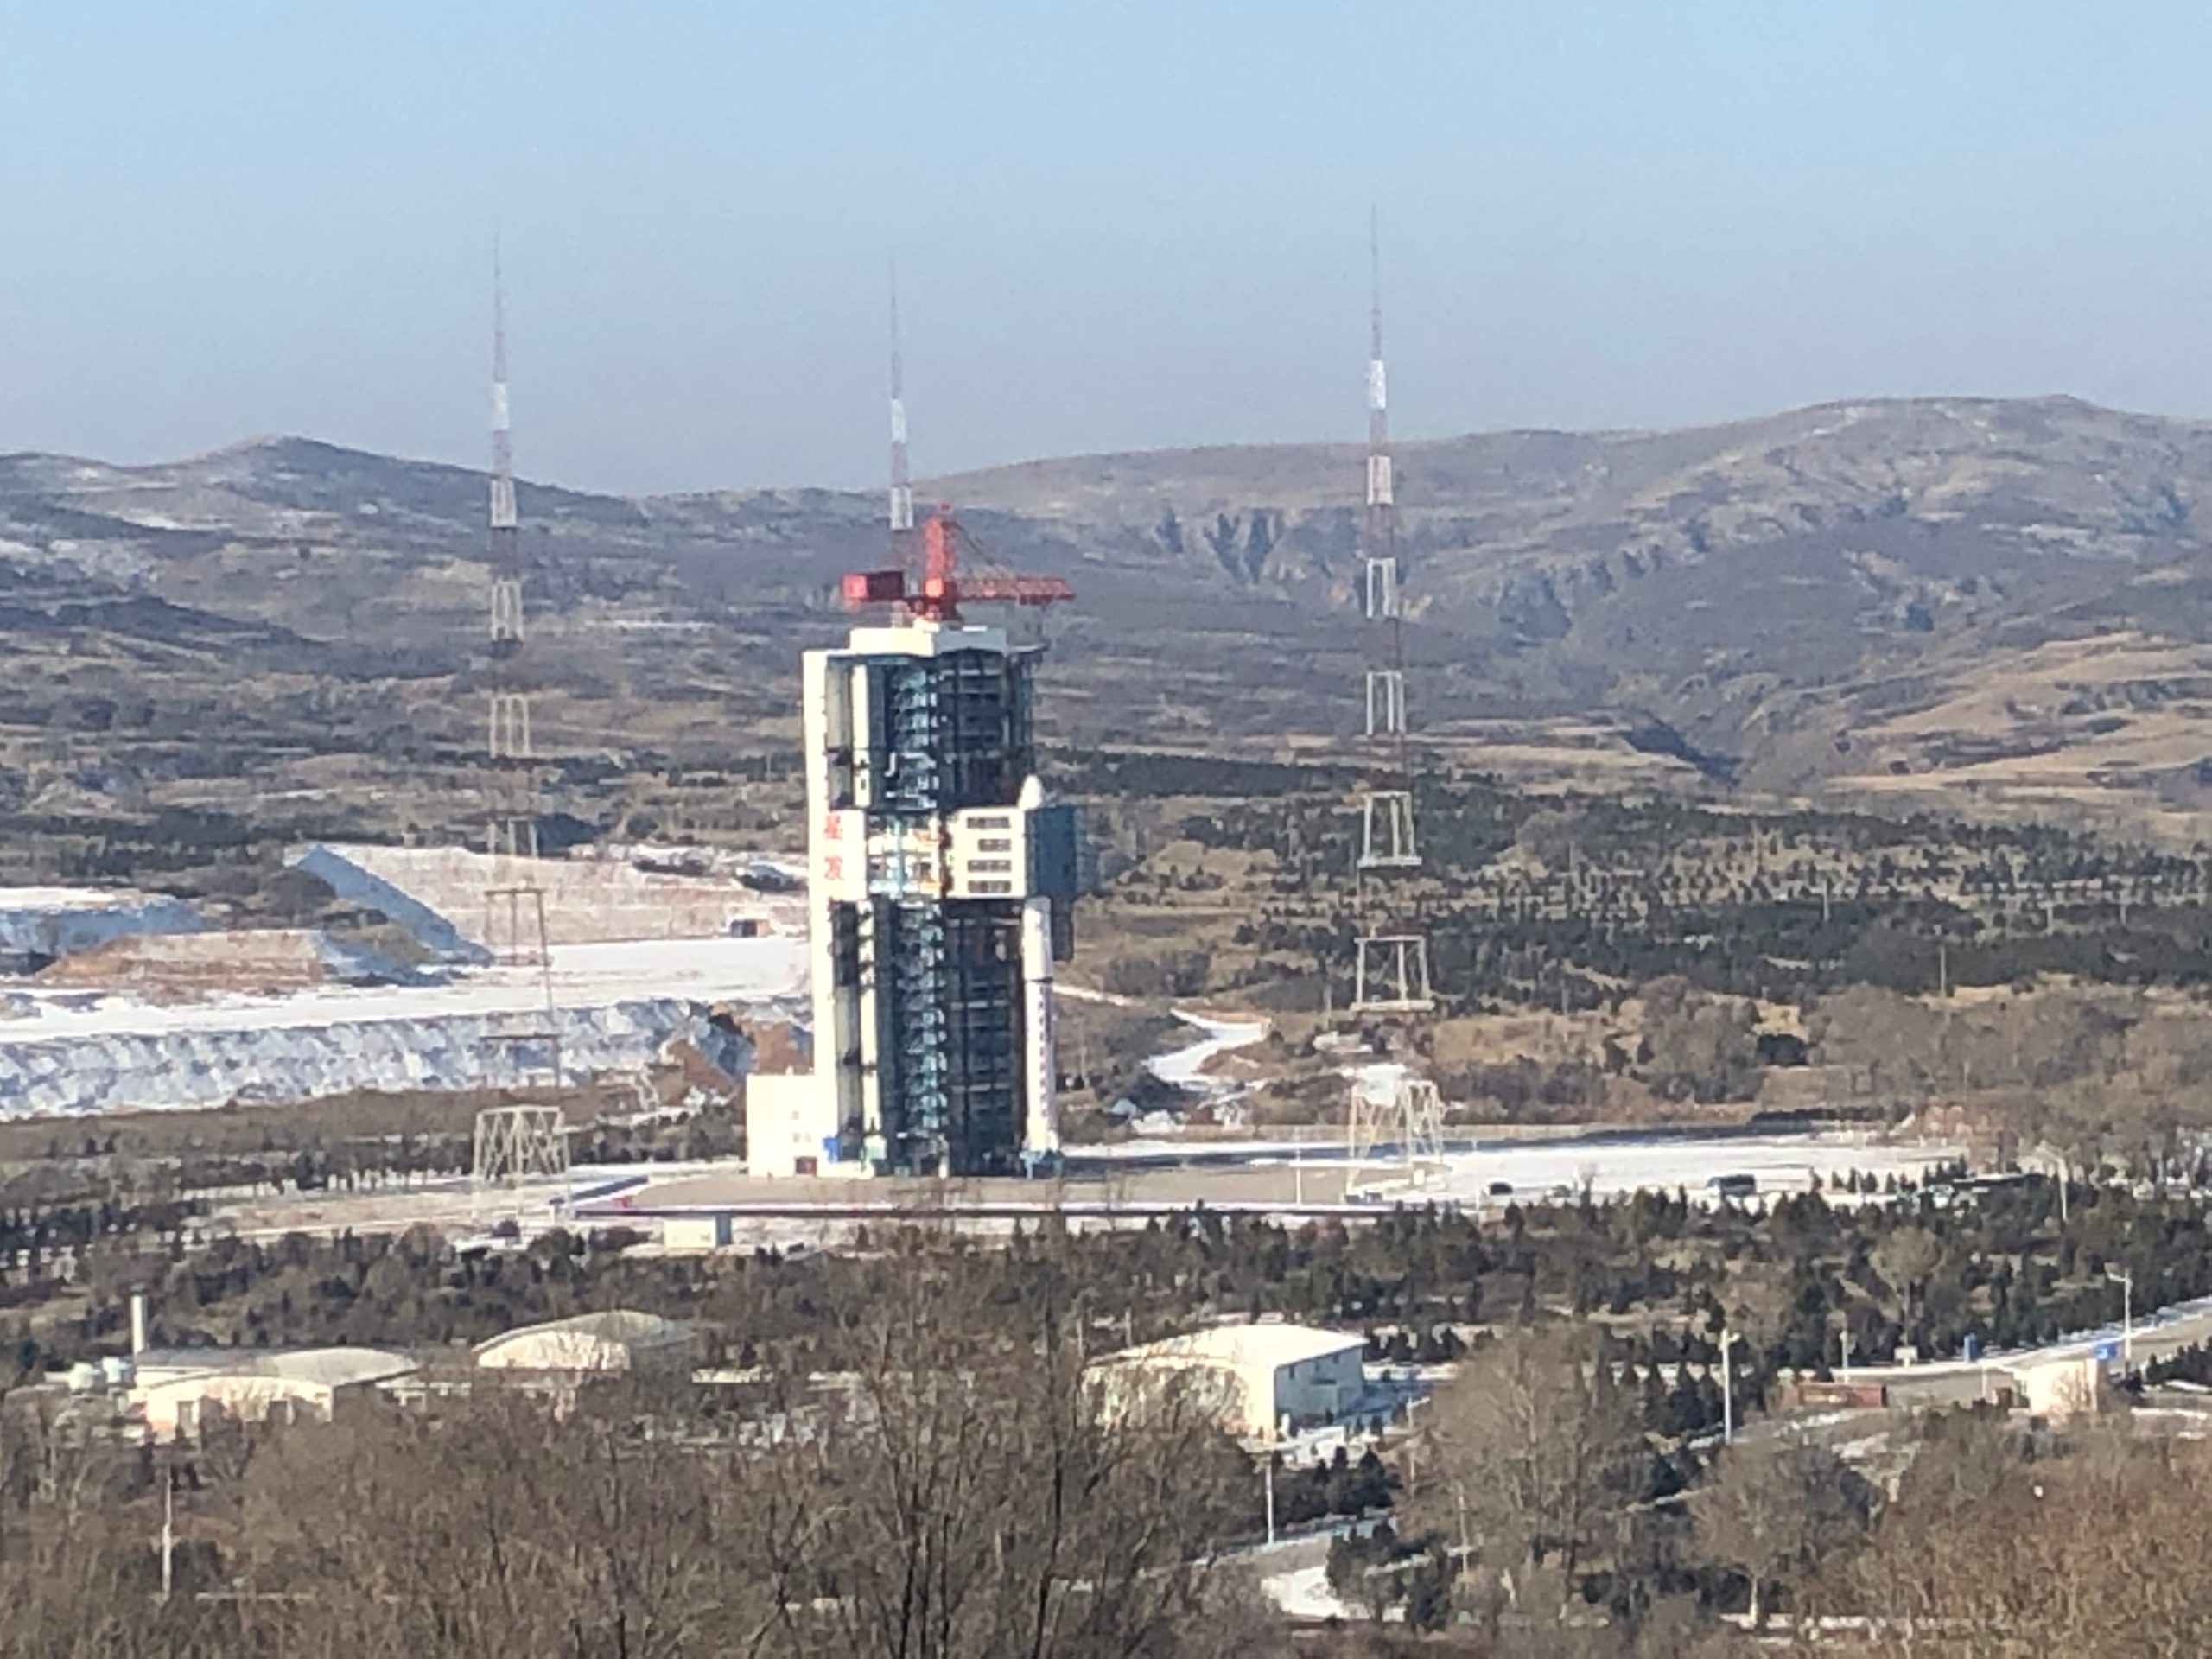 Le Centre de lancement de satellites de Taiyuan dans la province chinoise du Shanxi (nord), le 20 décembre 2019. (Photo/Xinhua)